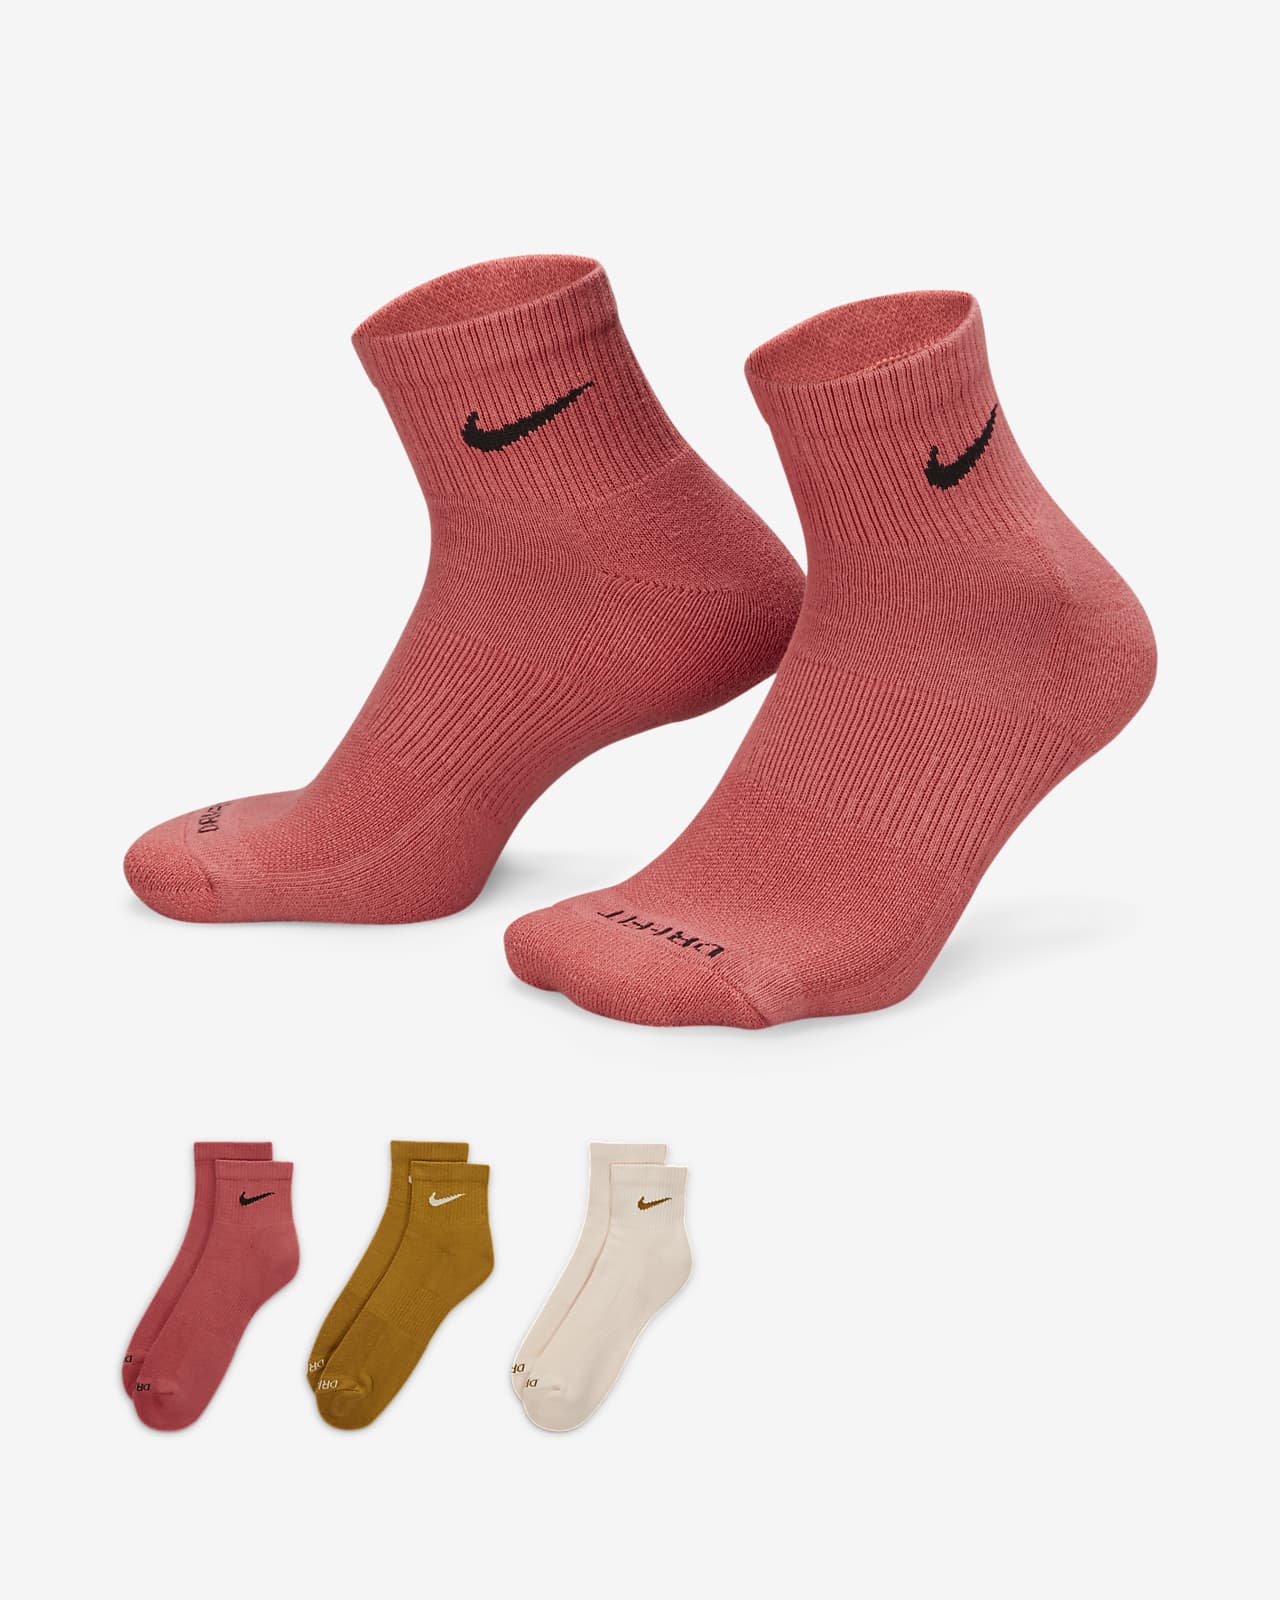 Calcetines de entrenamiento hasta el tobillo Nike Everyday Cushioned (3 pares). Nike.com